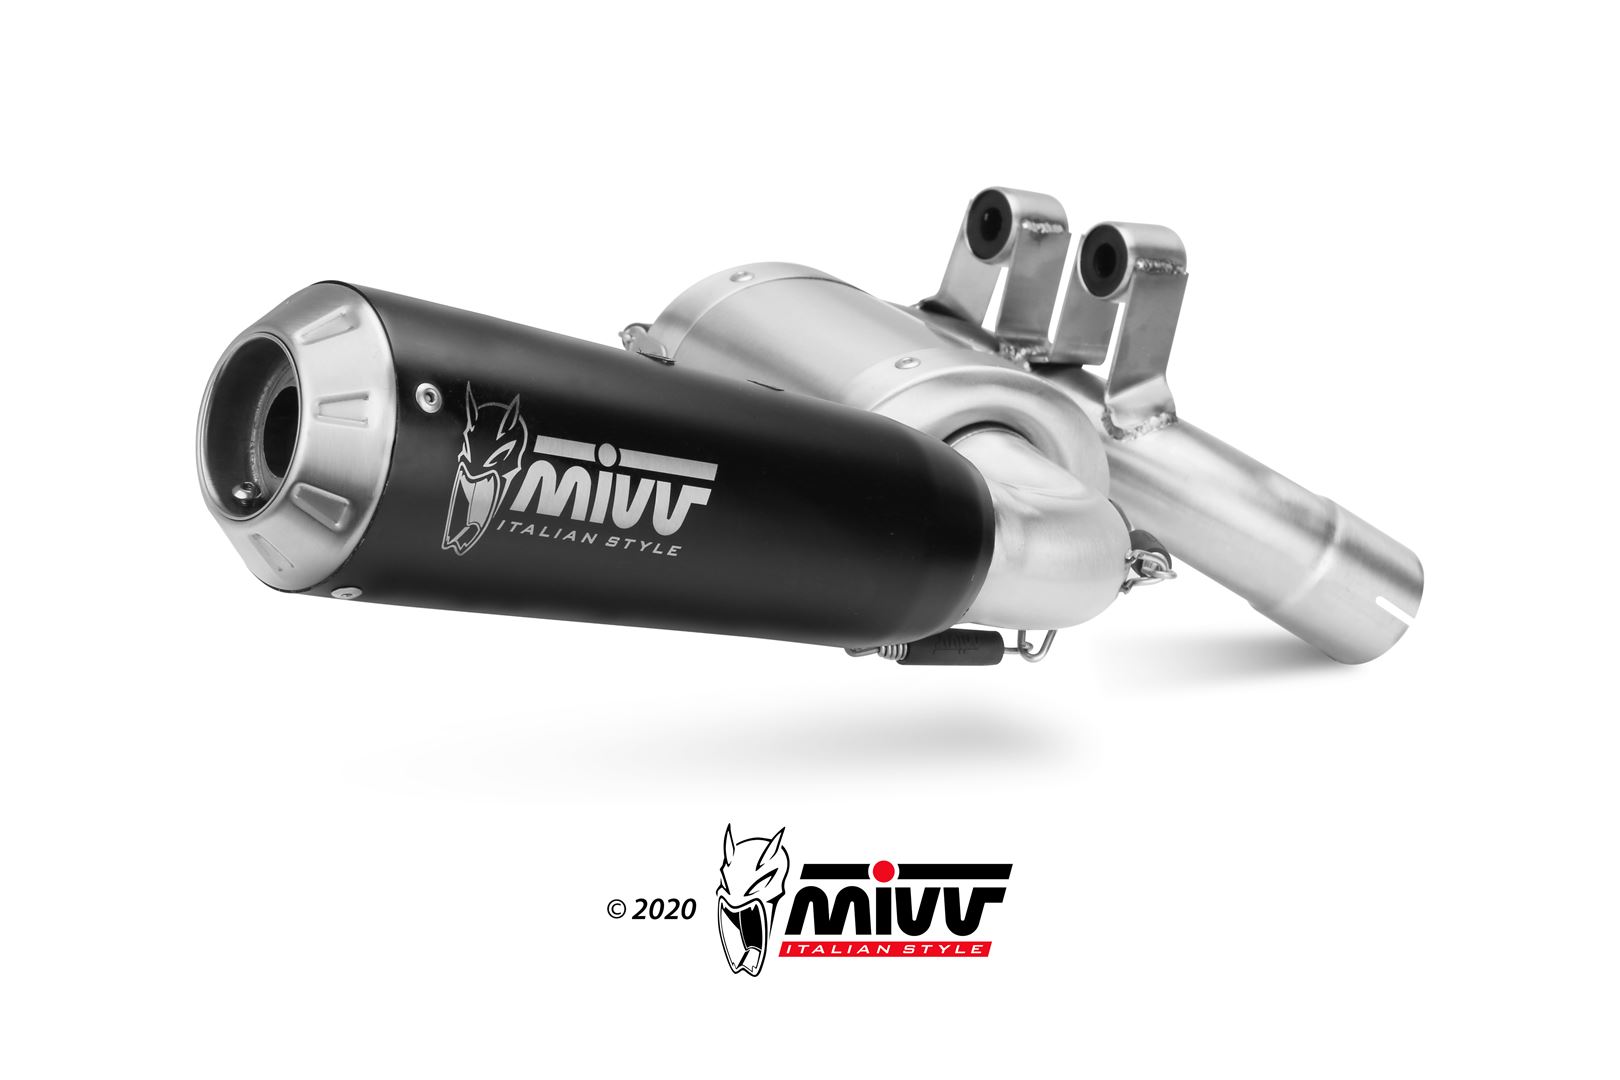 Mivv X-M1 Black Slip-on Einddemper met E-keur BMW F 900 XR 2020 > 2023